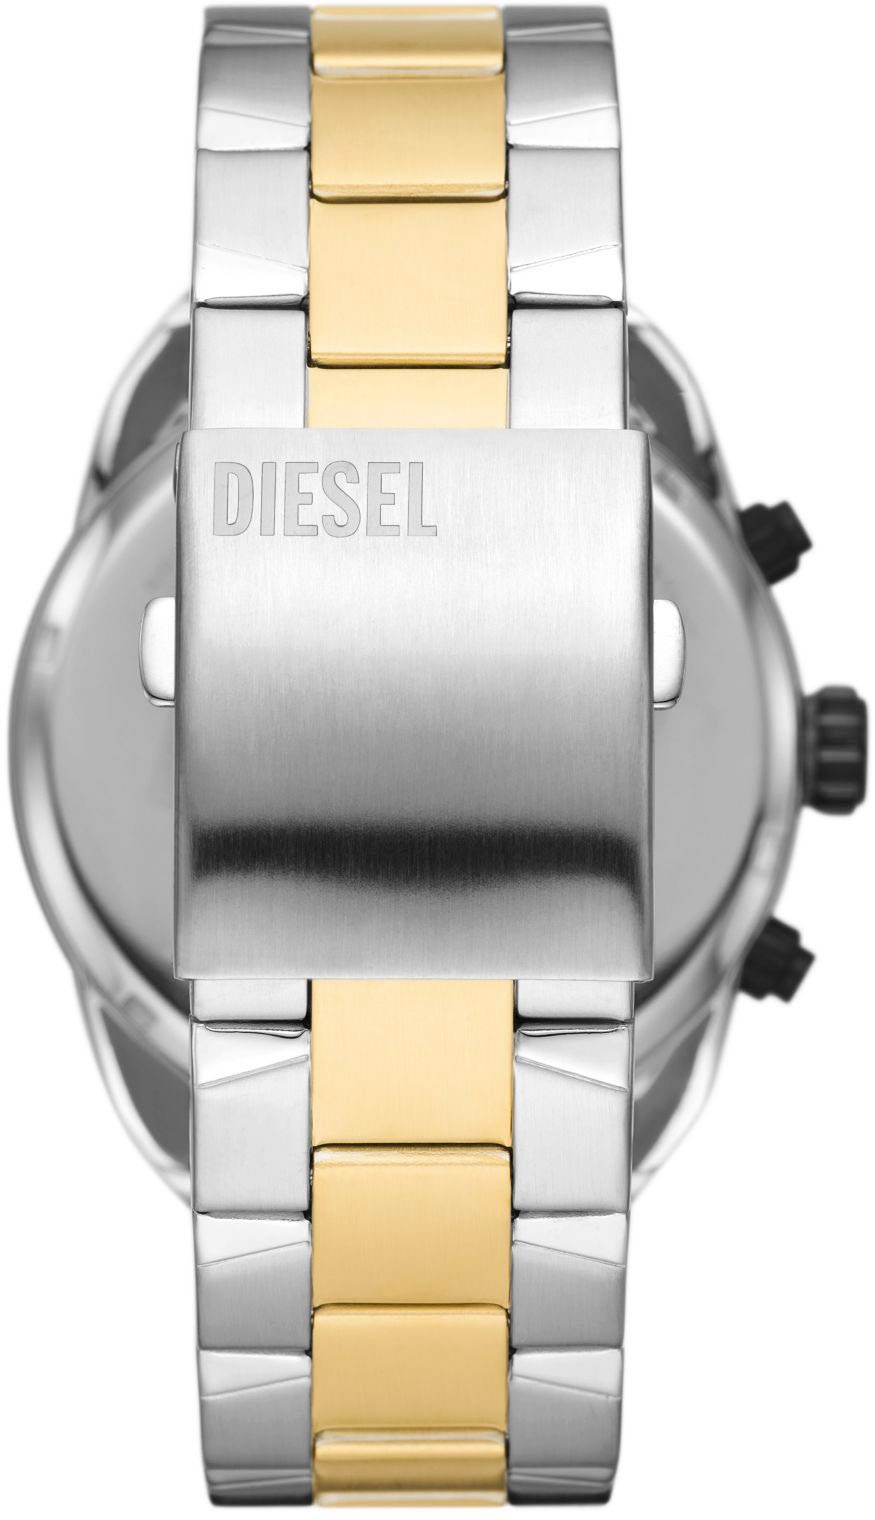 Diesel Chronograph »SPIKED, DZ4627«, Quarzuhr, Armbanduhr, Herrenuhr, Datum, Stoppfunktion